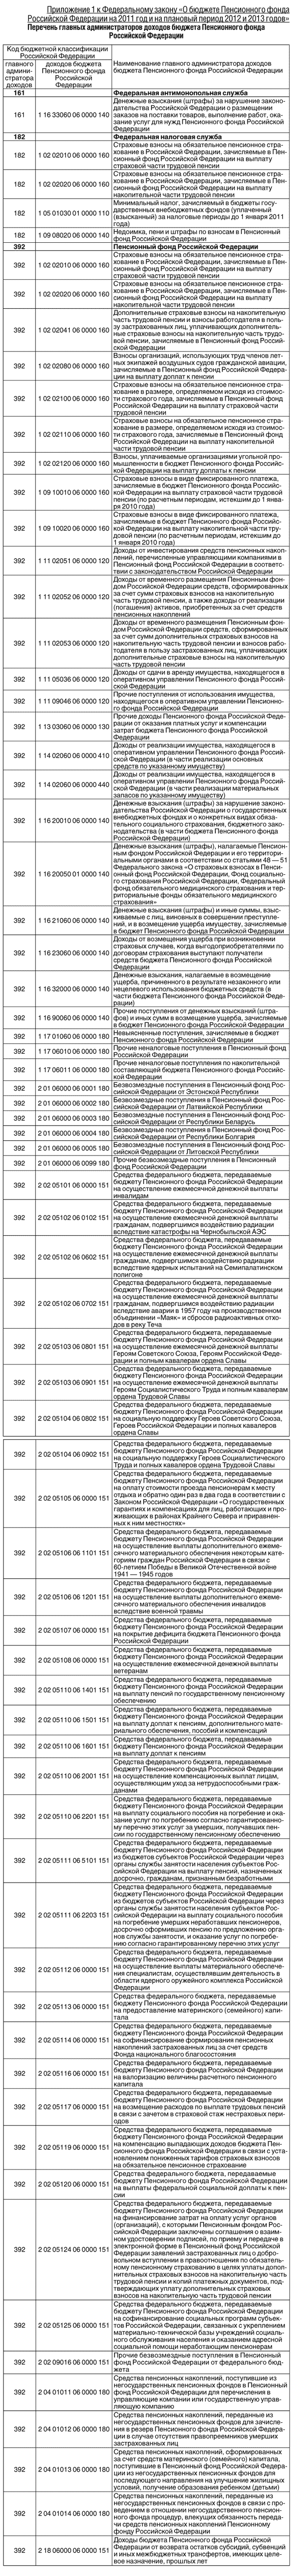 Приложение 1 к Федеральному закону «О бюджете Пенсионного фонда Российской Федерации на 2011 год и на плановый период 2012 и 2013 годов» 